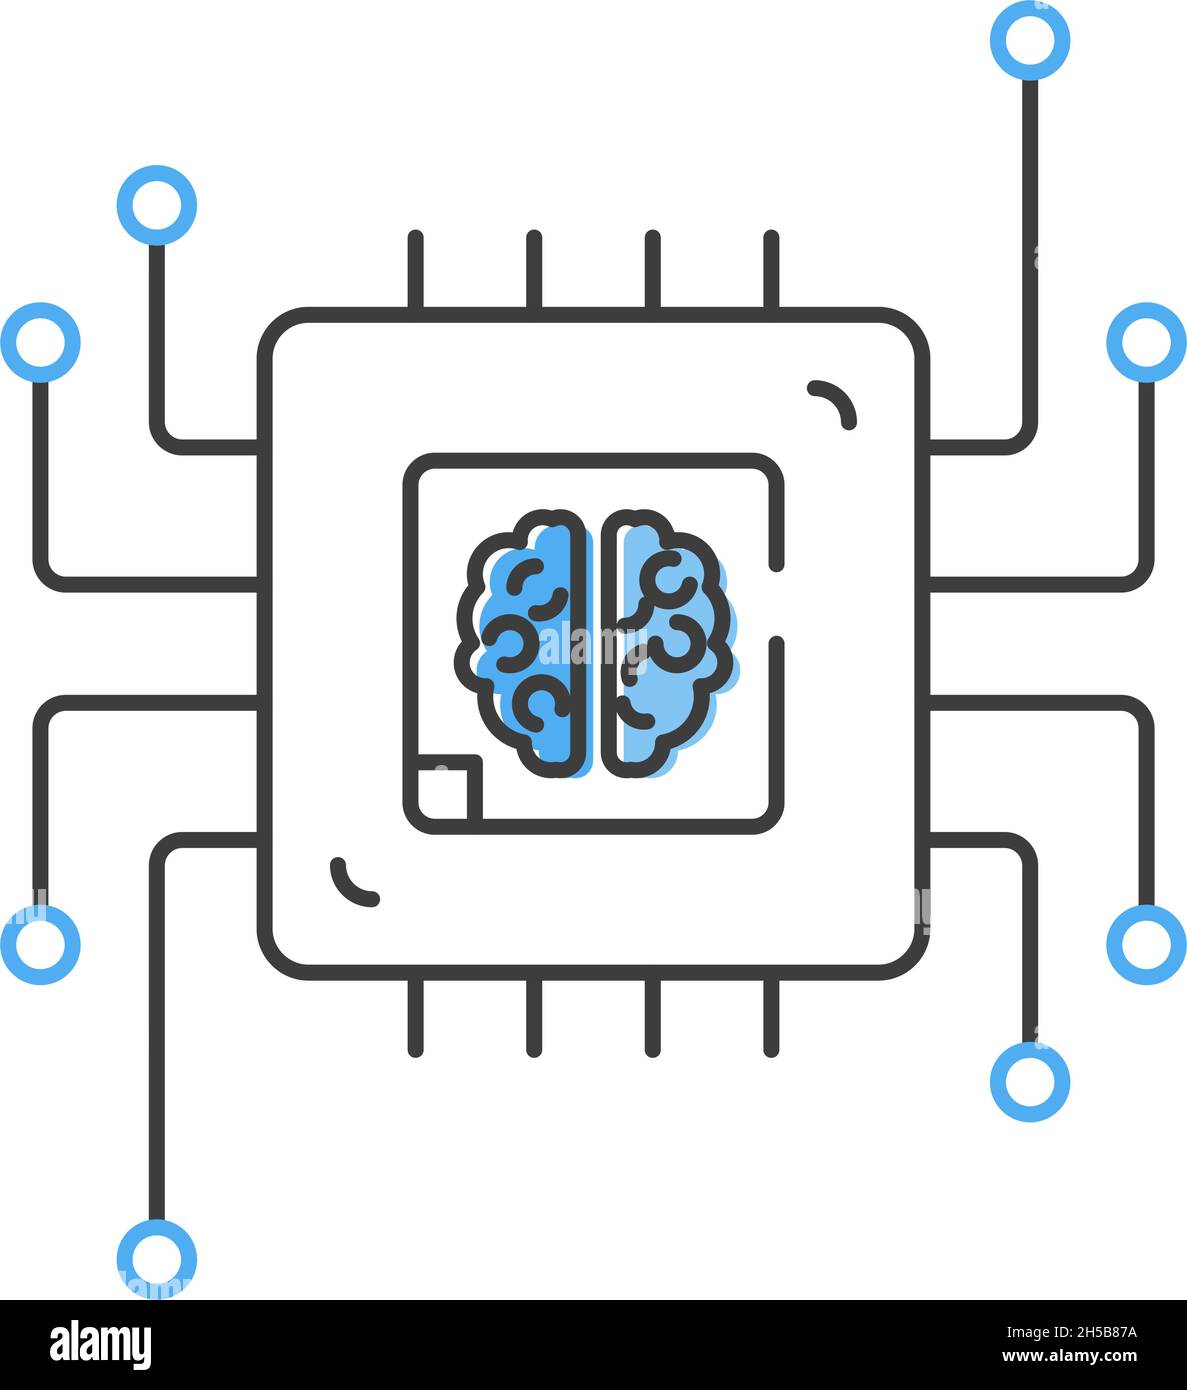 Cervello umano all'interno di un chip di computer CPU. Intelligenza artificiale o intelligenza artificiale. Icona stile piatto. Isolato. Illustrazione Vettoriale